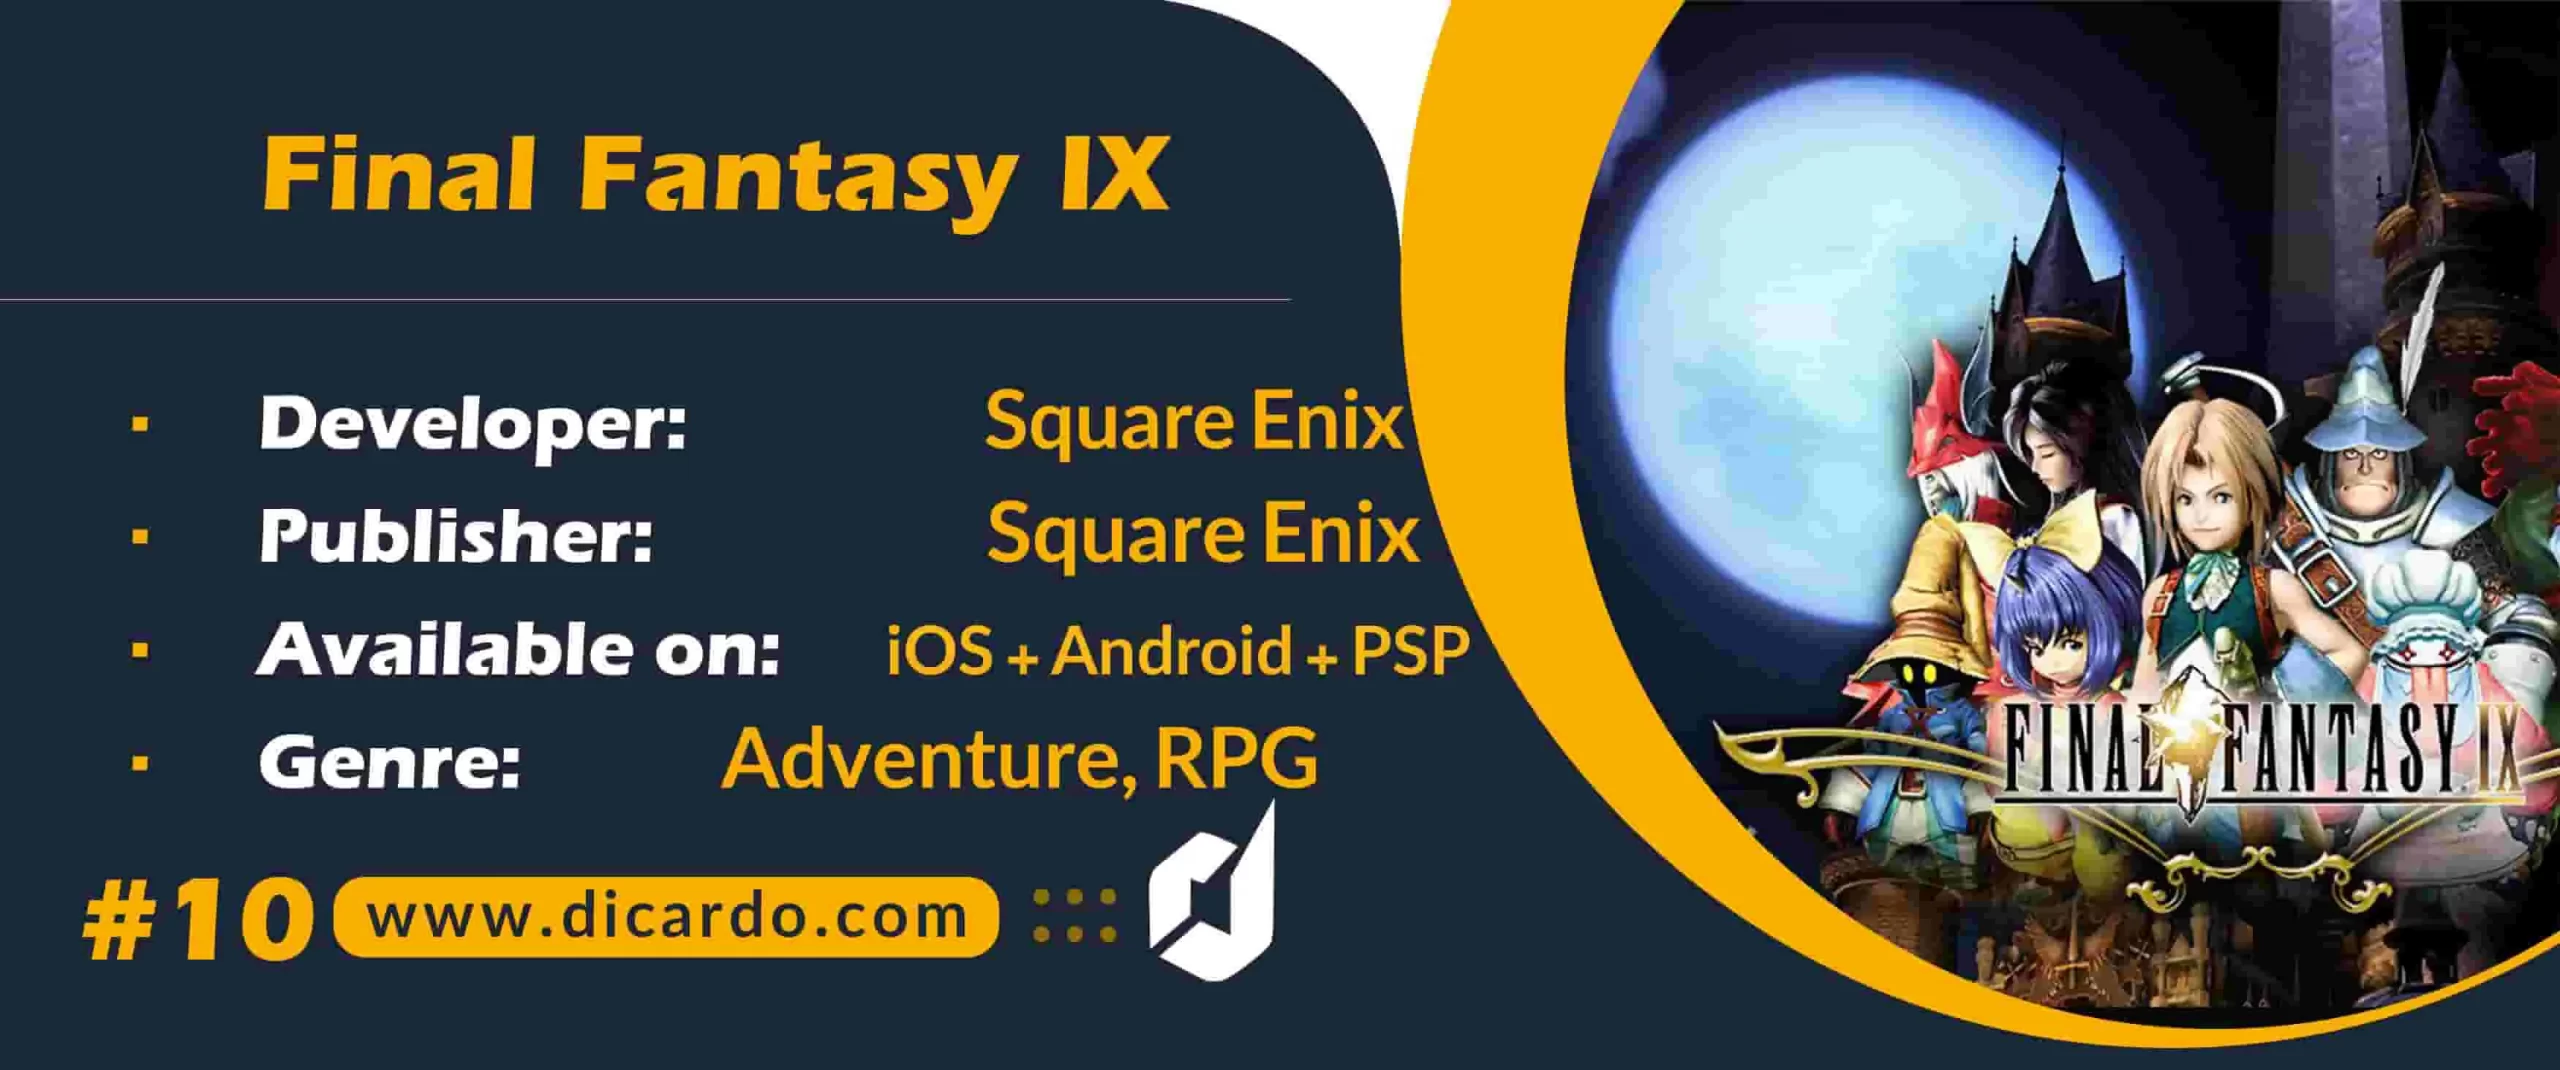 #10 فاینال فانتزی 9 Final Fantasy IX آخرین مورد از لیست بهترین بازیهای فاینال فانتزی